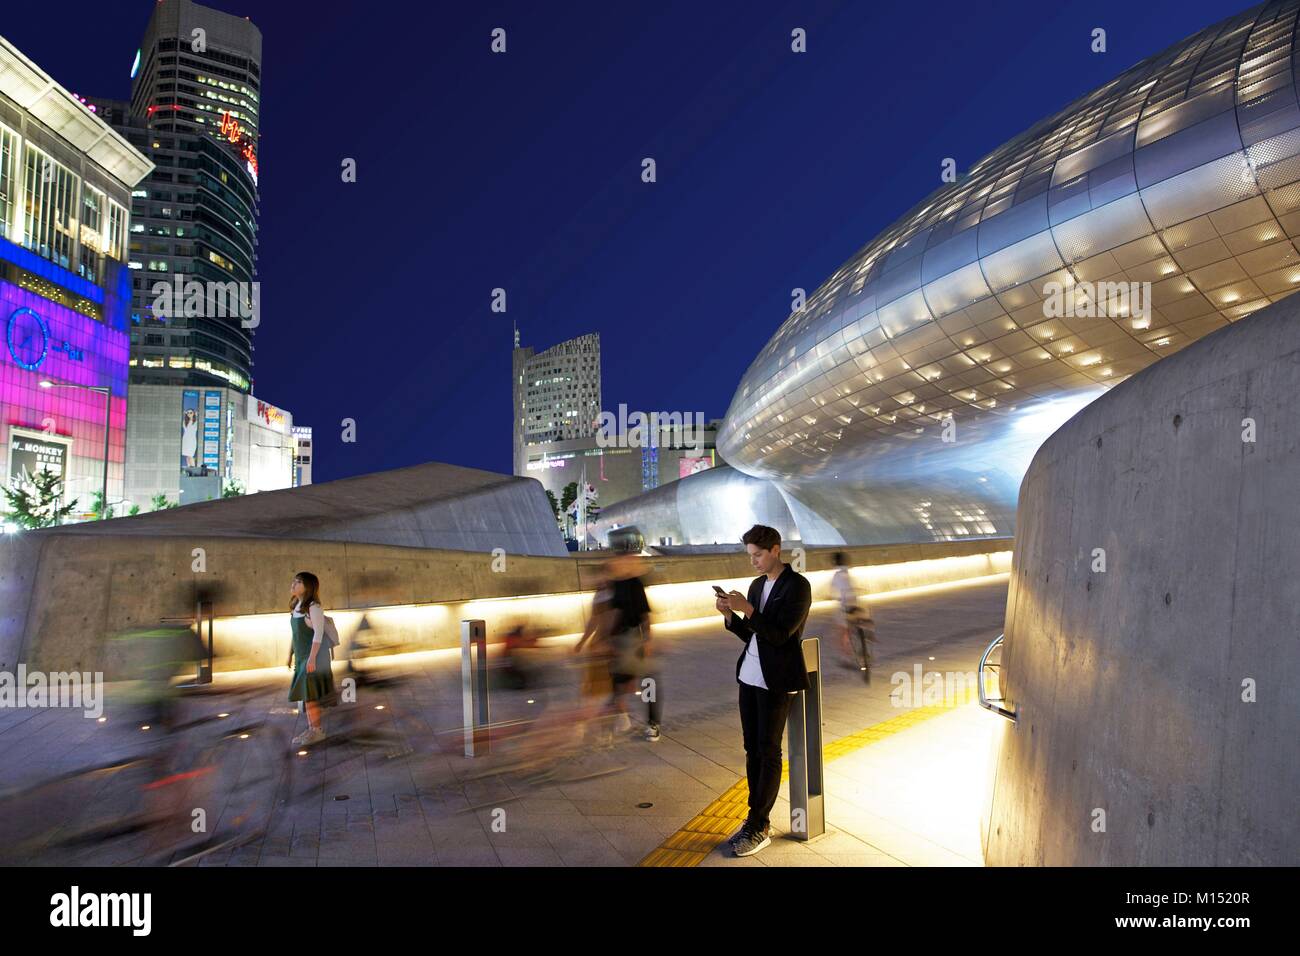 Corea del Sud, Seoul, Fabien Yoon, stella francese del coreano medias, nella parte anteriore del Design di Dongdaemun Plaza, edificio futuristico dell'architetto Zaha Hadid Foto Stock